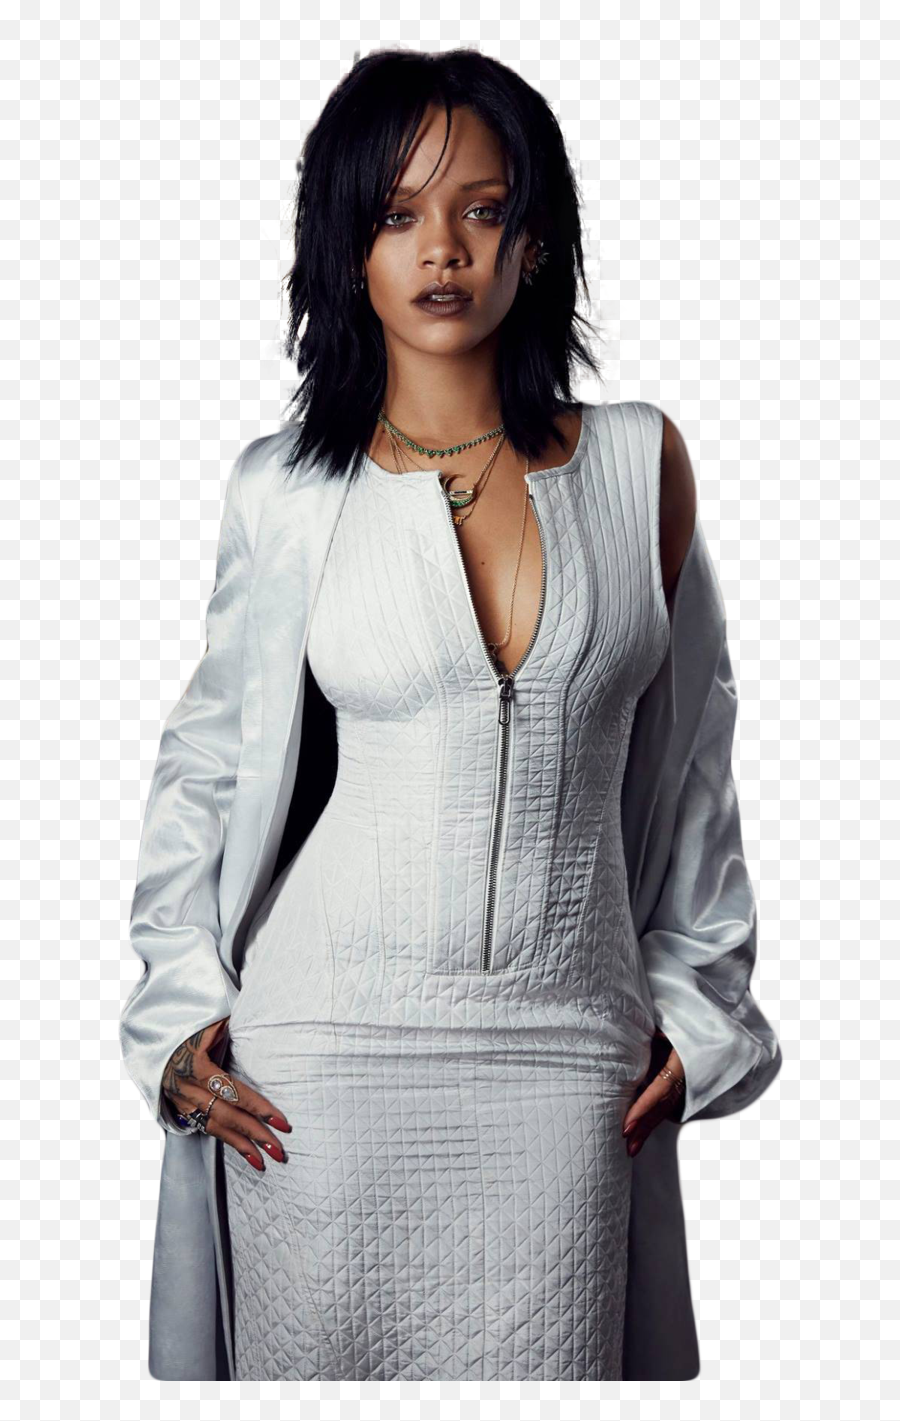 Rihanna Png 2015 6 Image - Transparent Rihanna Png,Rihanna Transparent Background